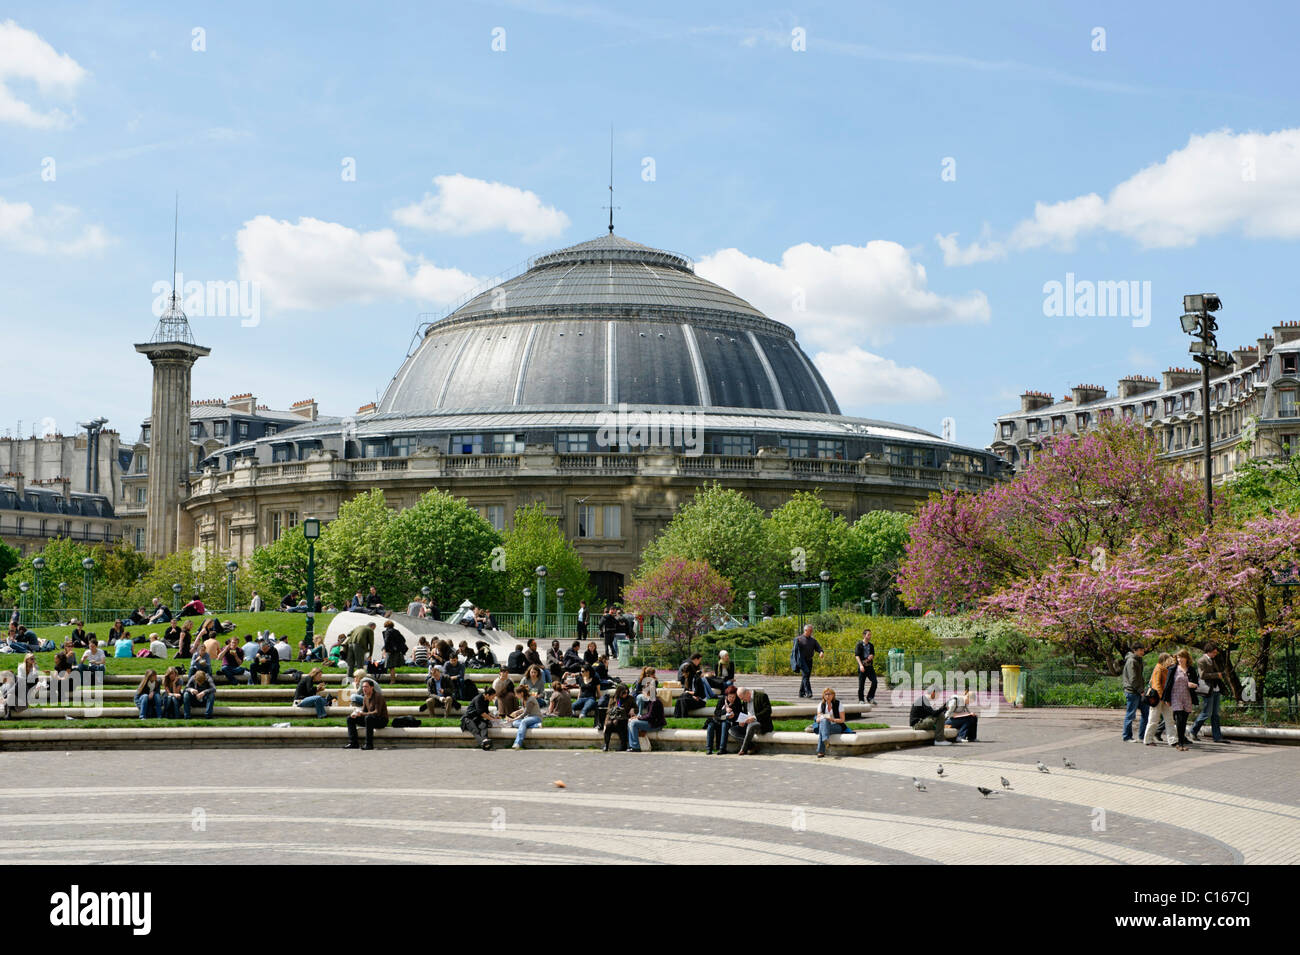 Bourse de commerce paris fotografías e imágenes de alta resolución - Alamy